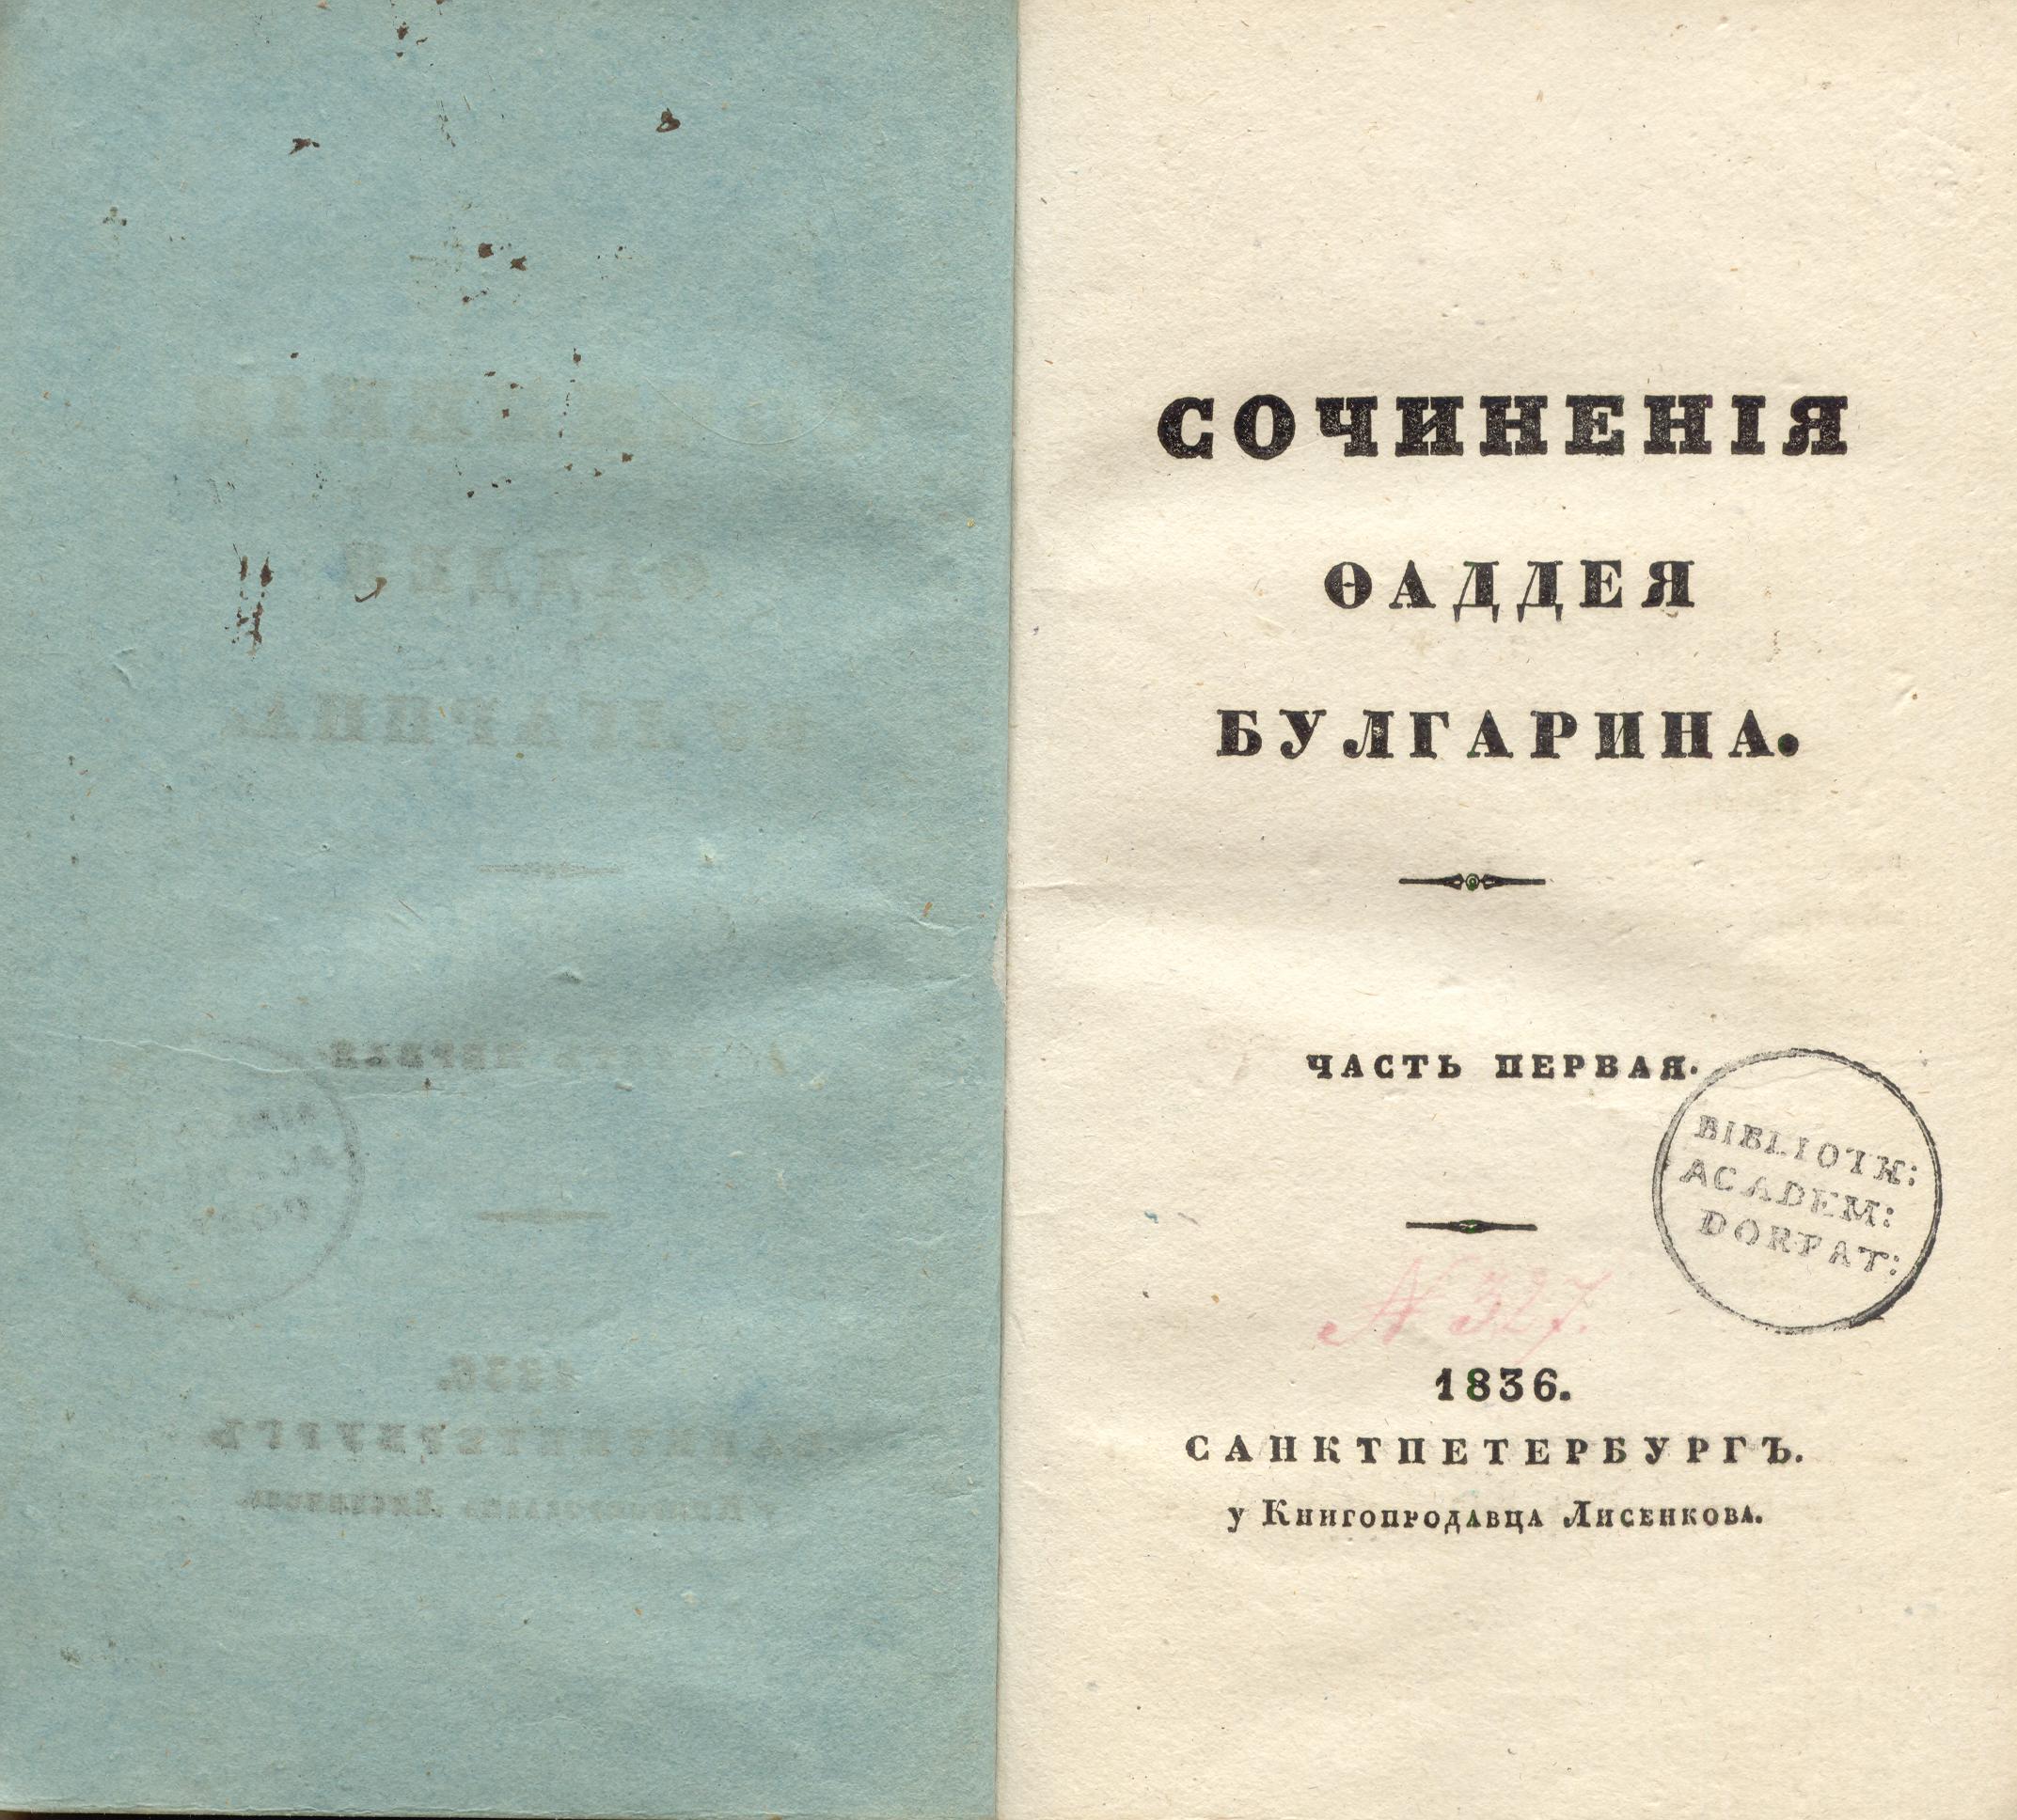 Сочиненія [1] (1836) | 2. Title page